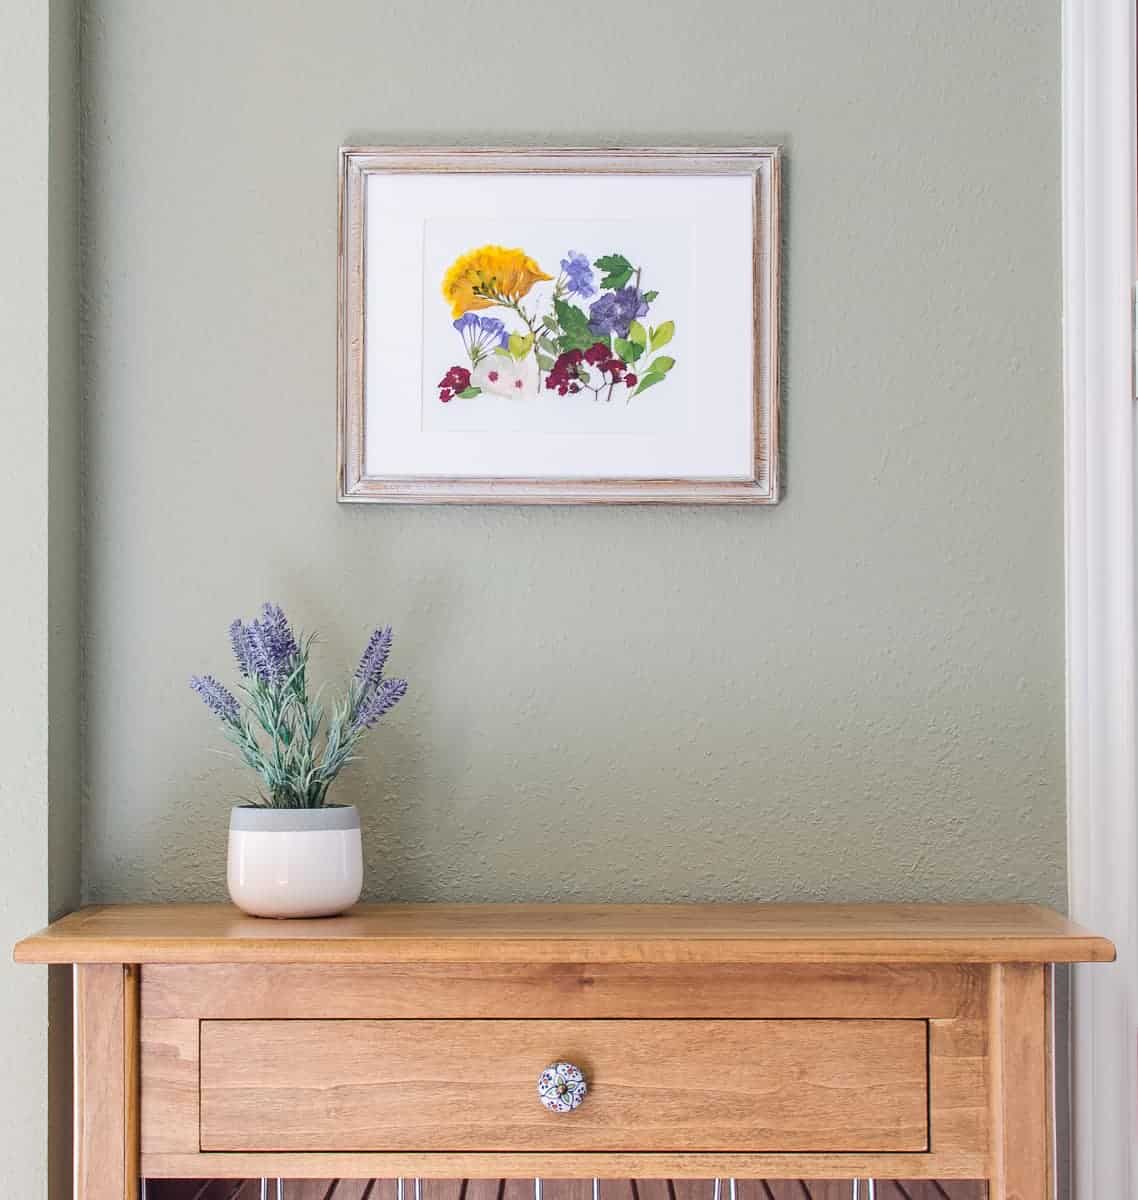 Microwave easy DIY pressed flower wall art tutorial